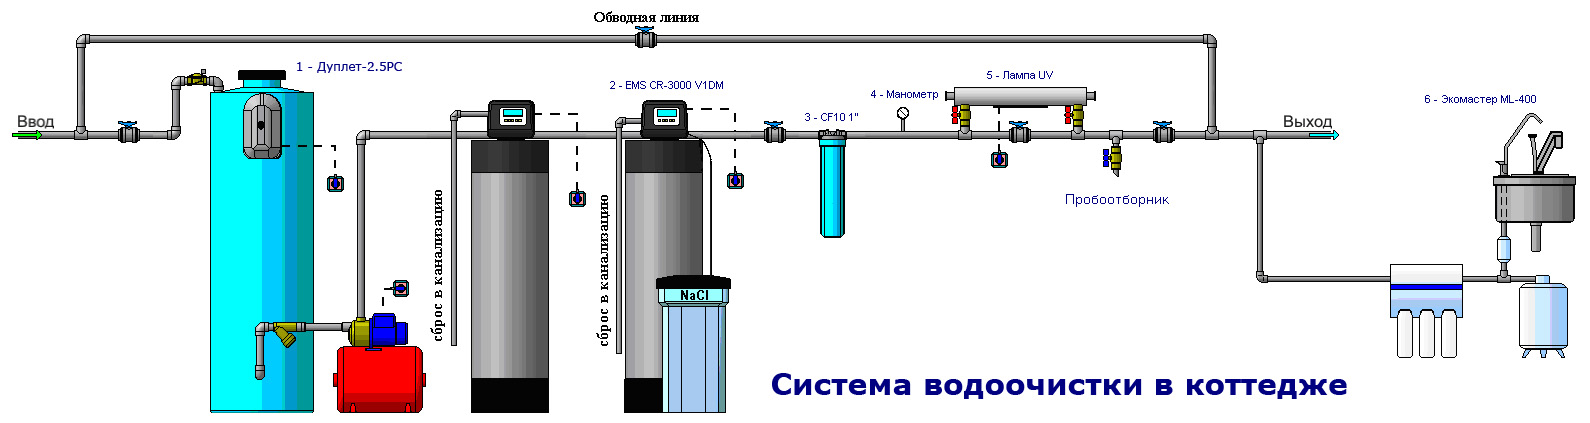 Схема системы водоочистки в коттедже.